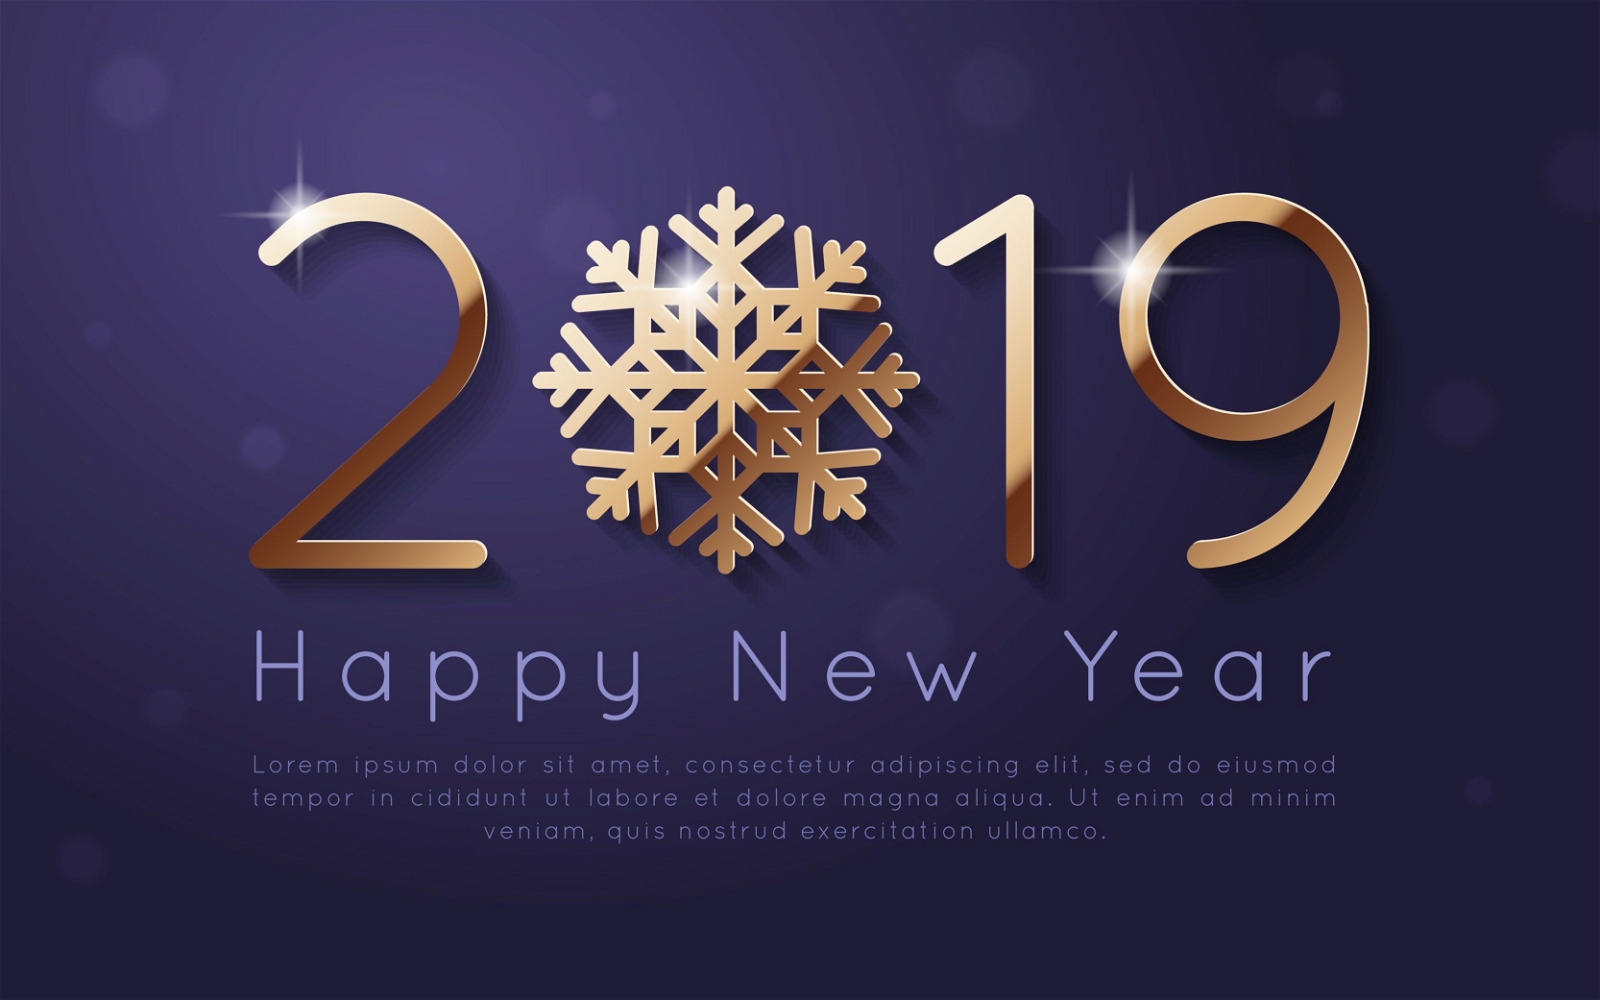 New Year 2019 background design